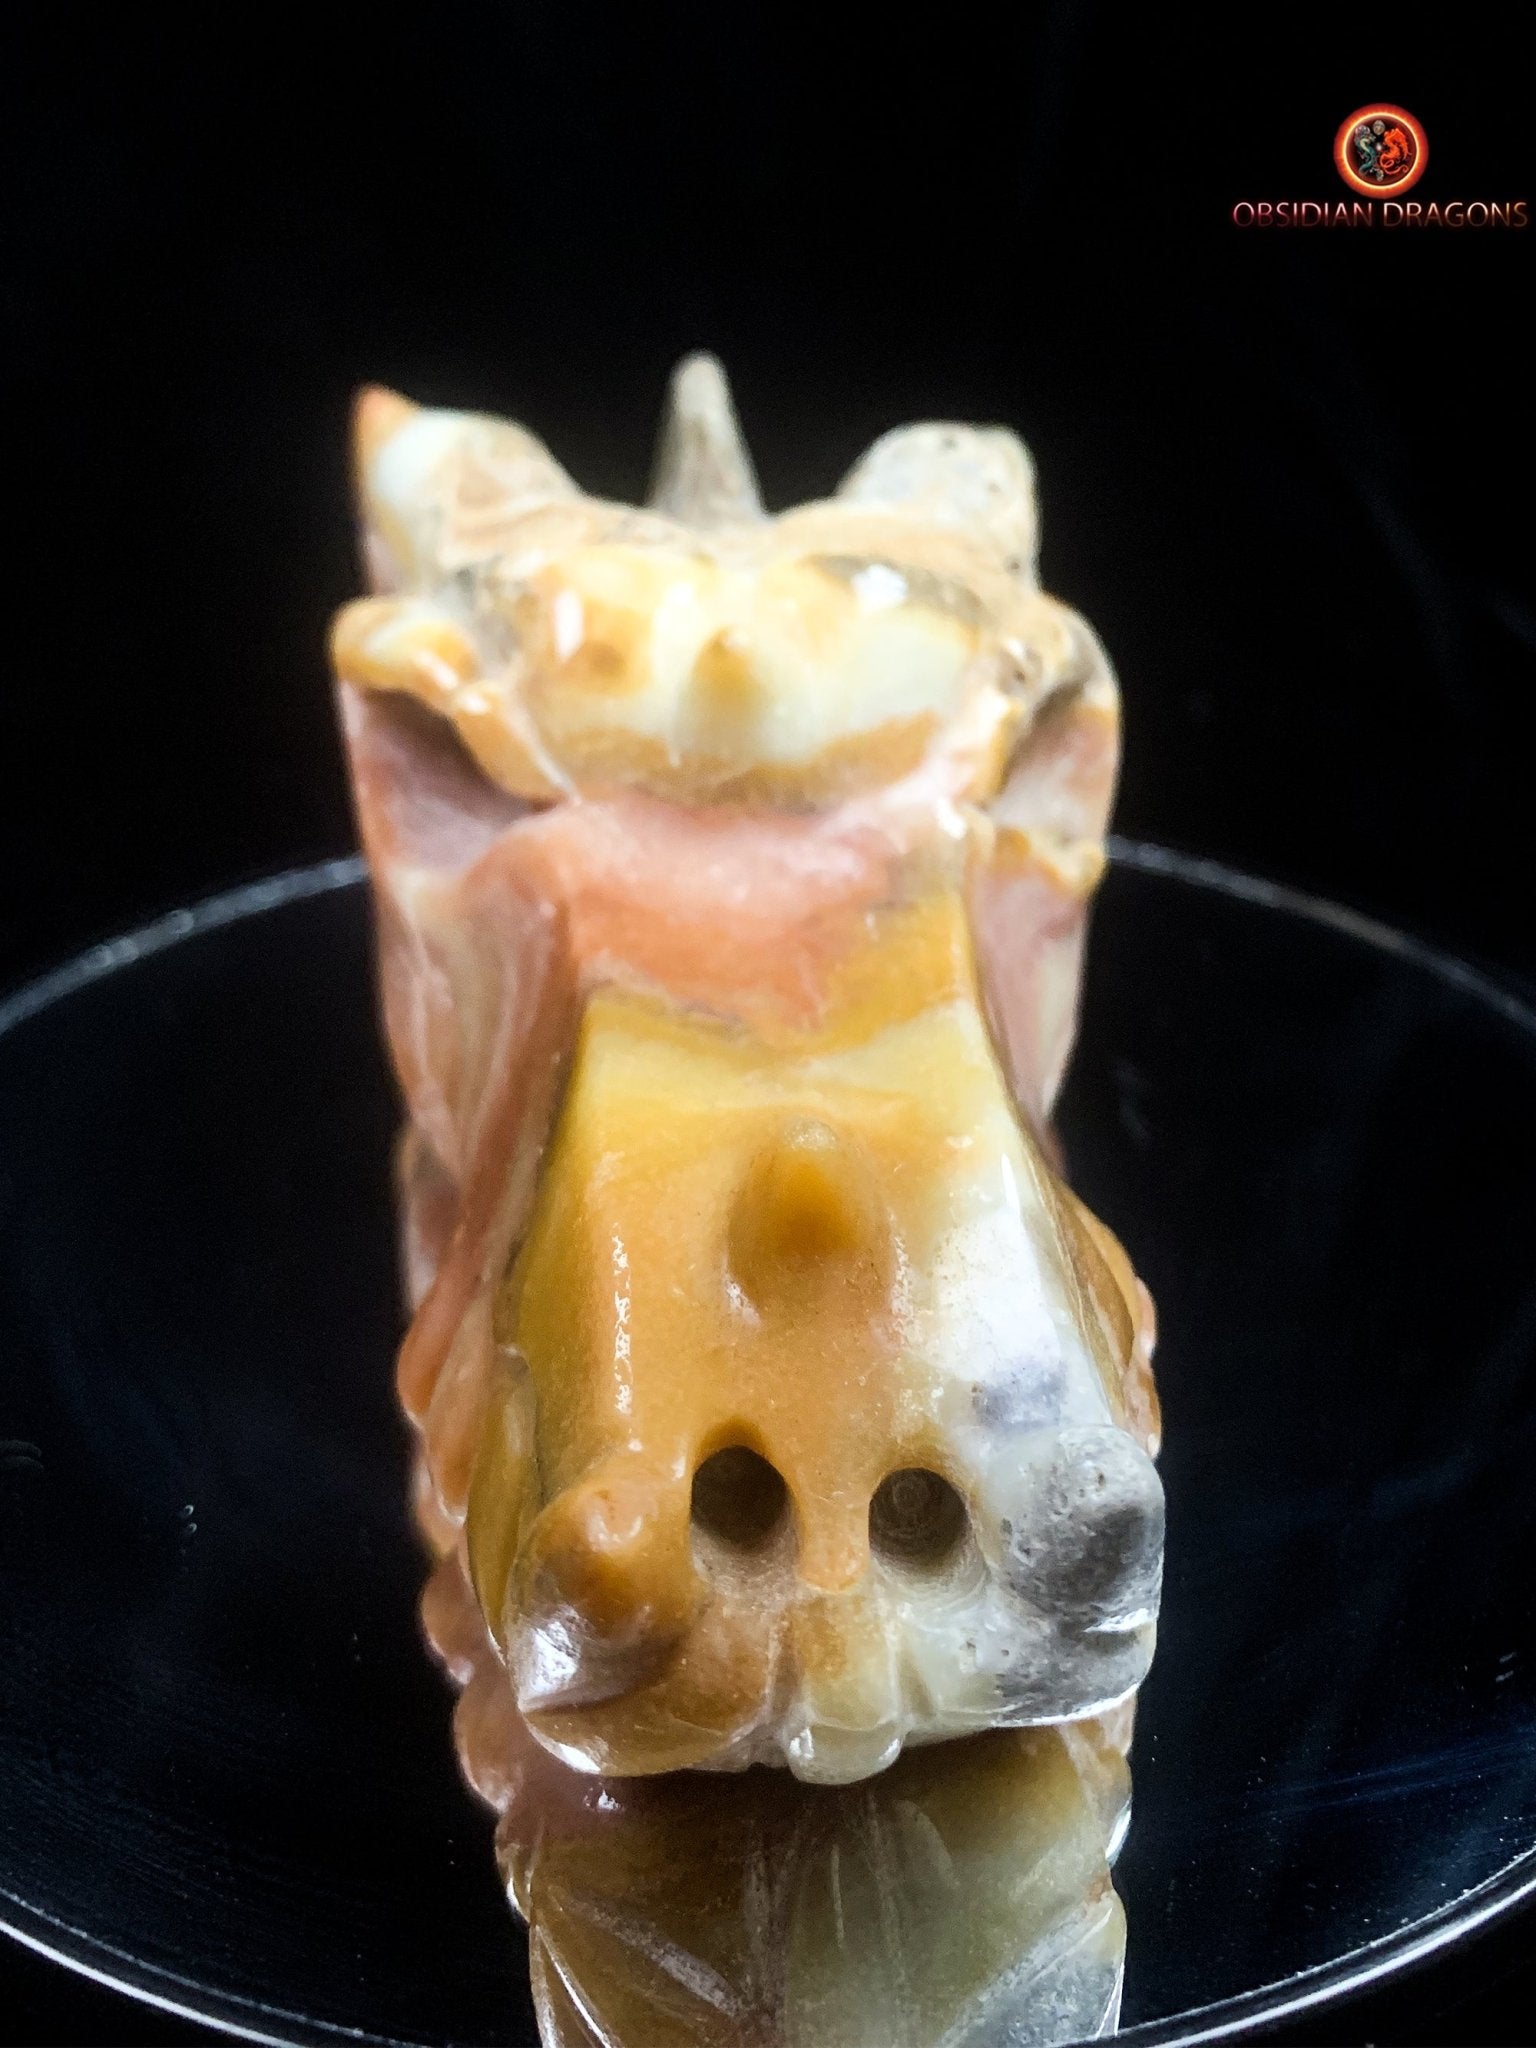 Crâne de dragon en Aragonite- Artisanal | obsidian dragons